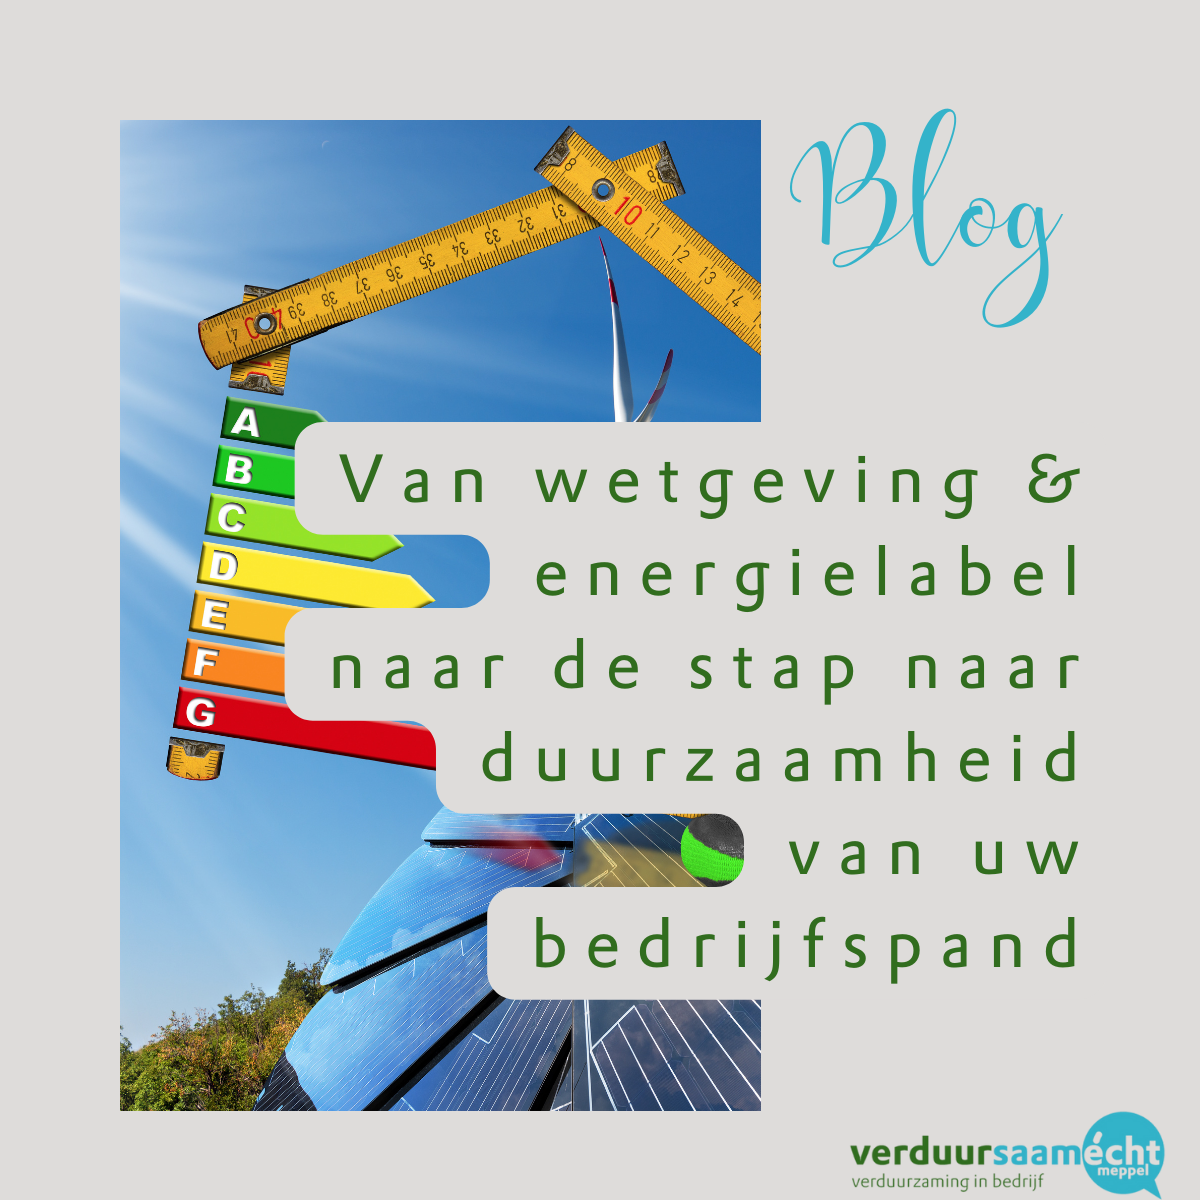 VEM blogt - van wetgeving & energielabel naar de stap naar duurzaamheid van uw bedrijfspand